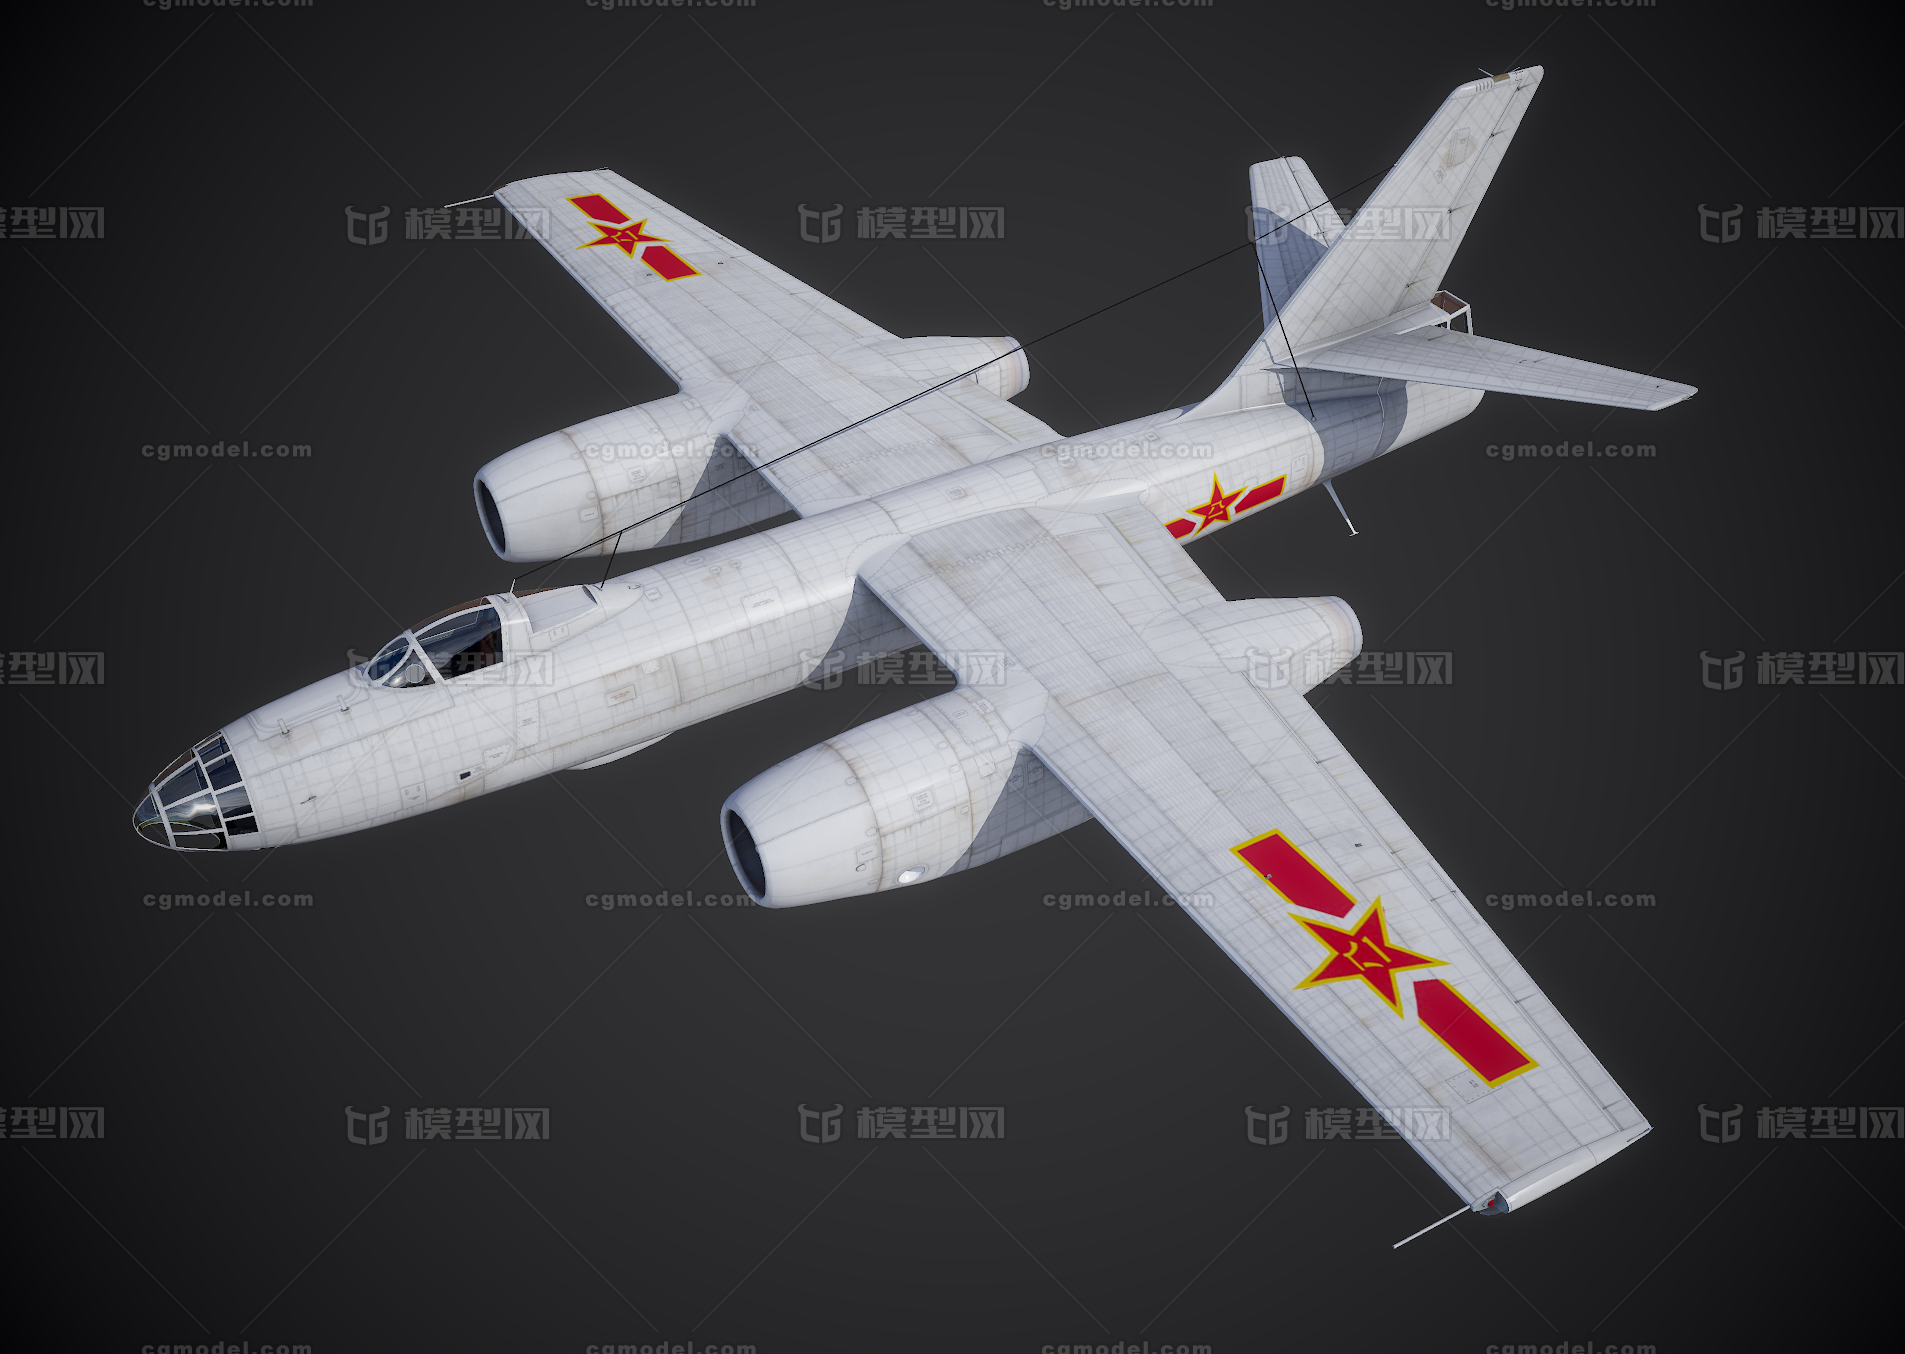 中国空军 轰-5 h-5 轰炸机 苏联il-28 伊尔-28 喷气式战术轰炸机 八一